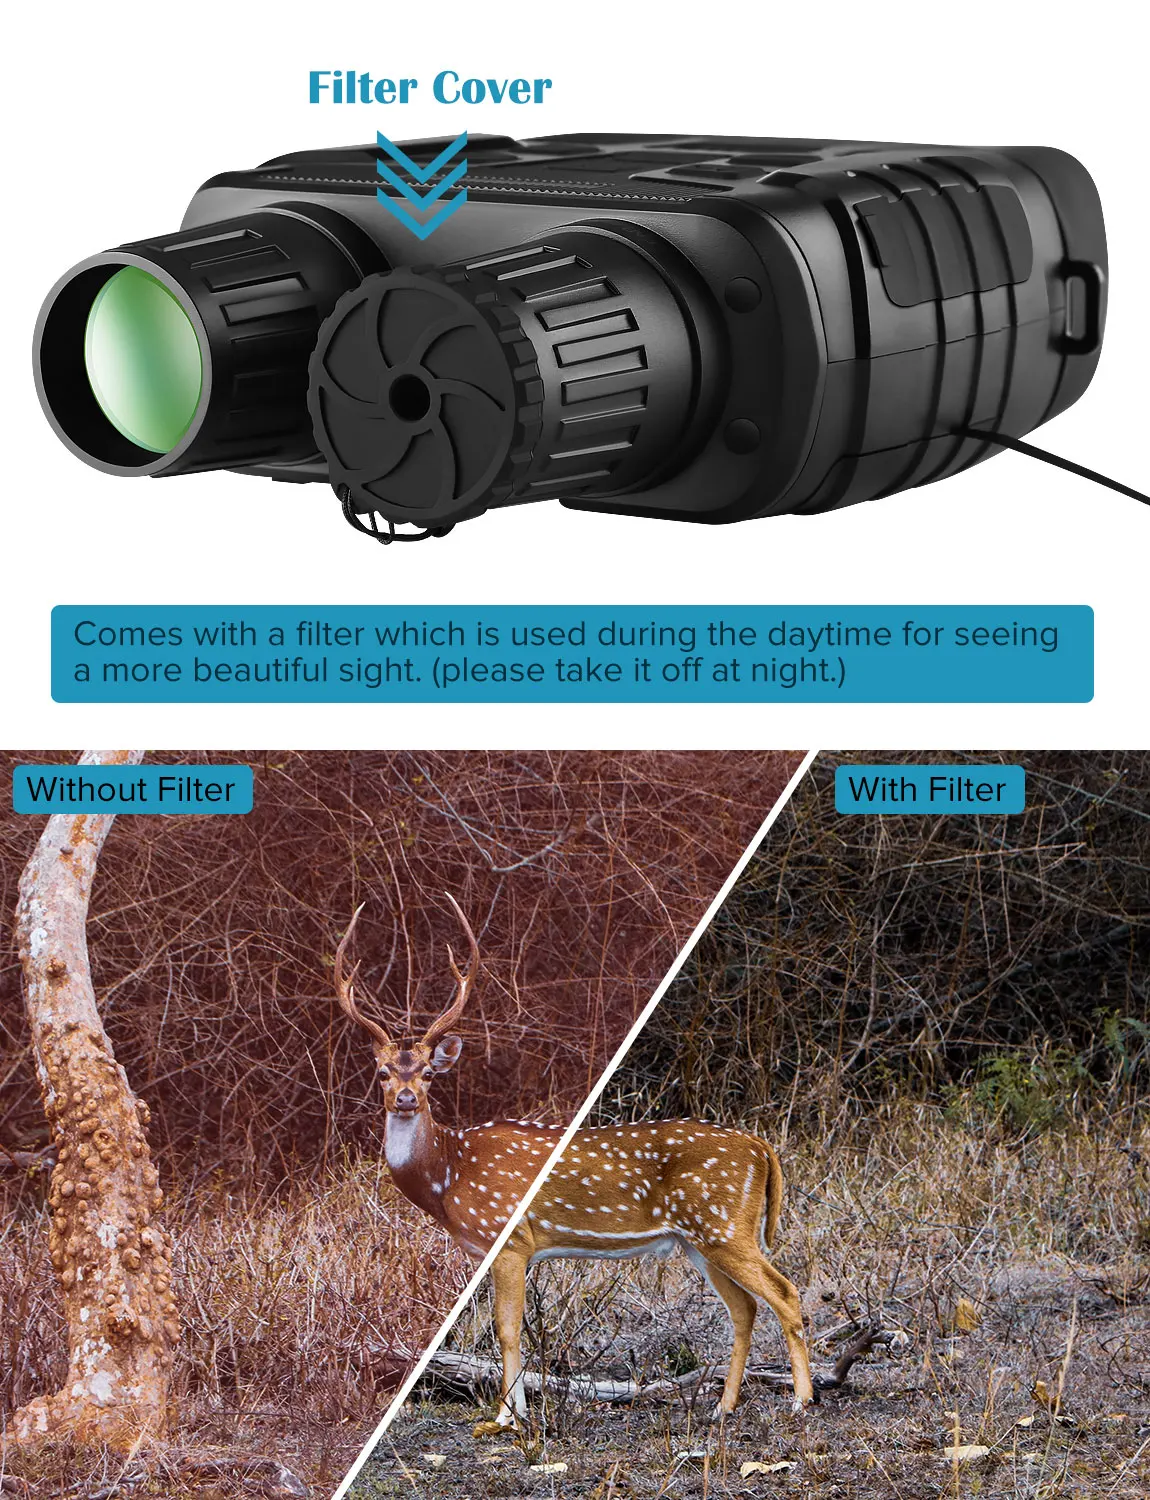 Прибор ночного видения бинокль 300 ярдов цифровой ИК телескоп зум оптика с 2,3 'экраном фото видео запись охотничья камера